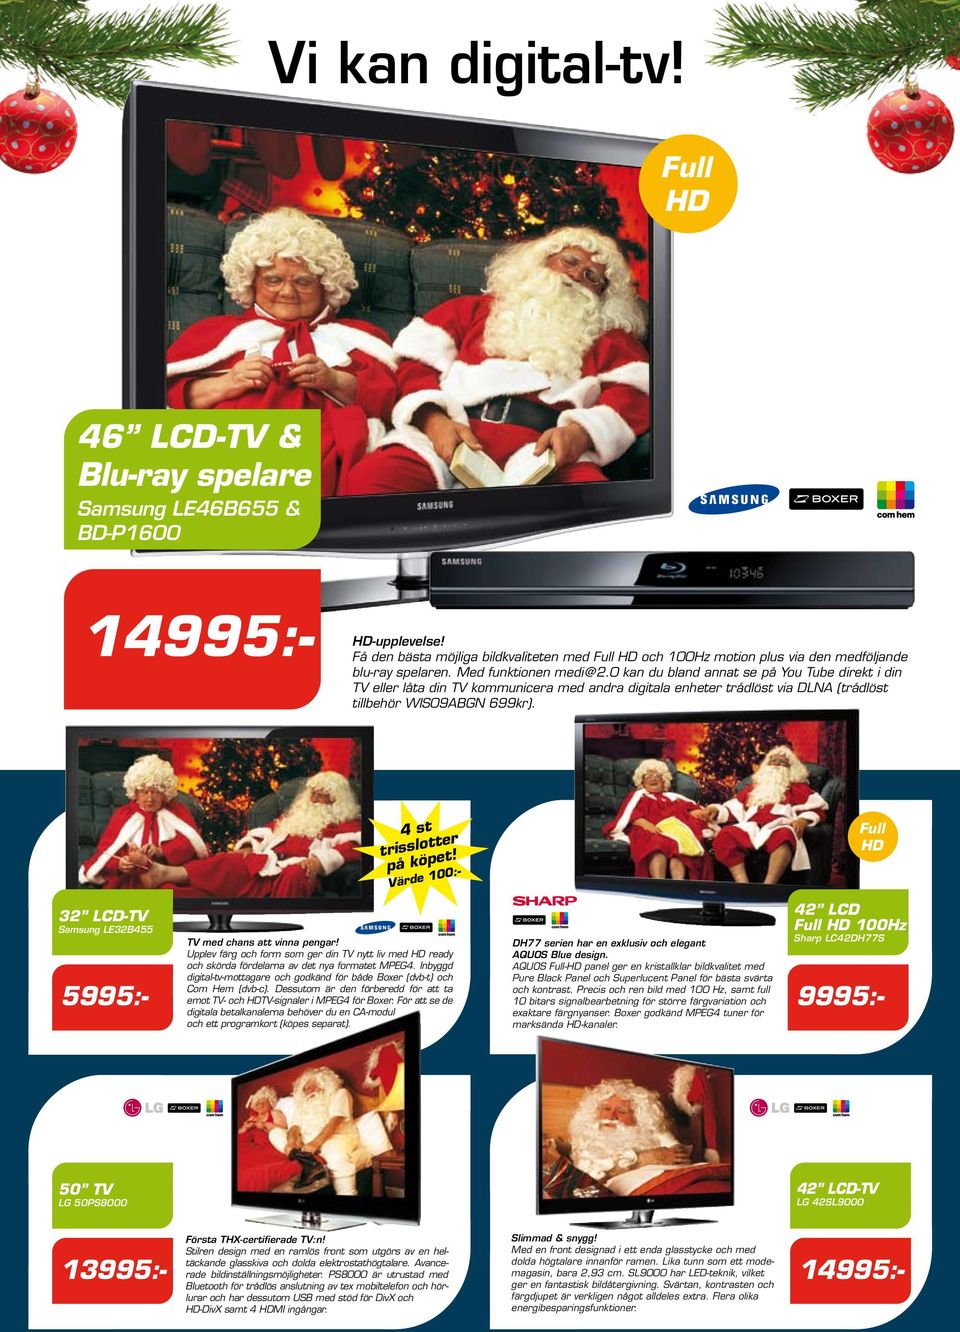 4 st trisslotter på köpet! Värde 100:- 32 LCD-TV Samsung LE32B455 5995:- *Din för 799:- i 51 mån TV med chans att vinna pengar!